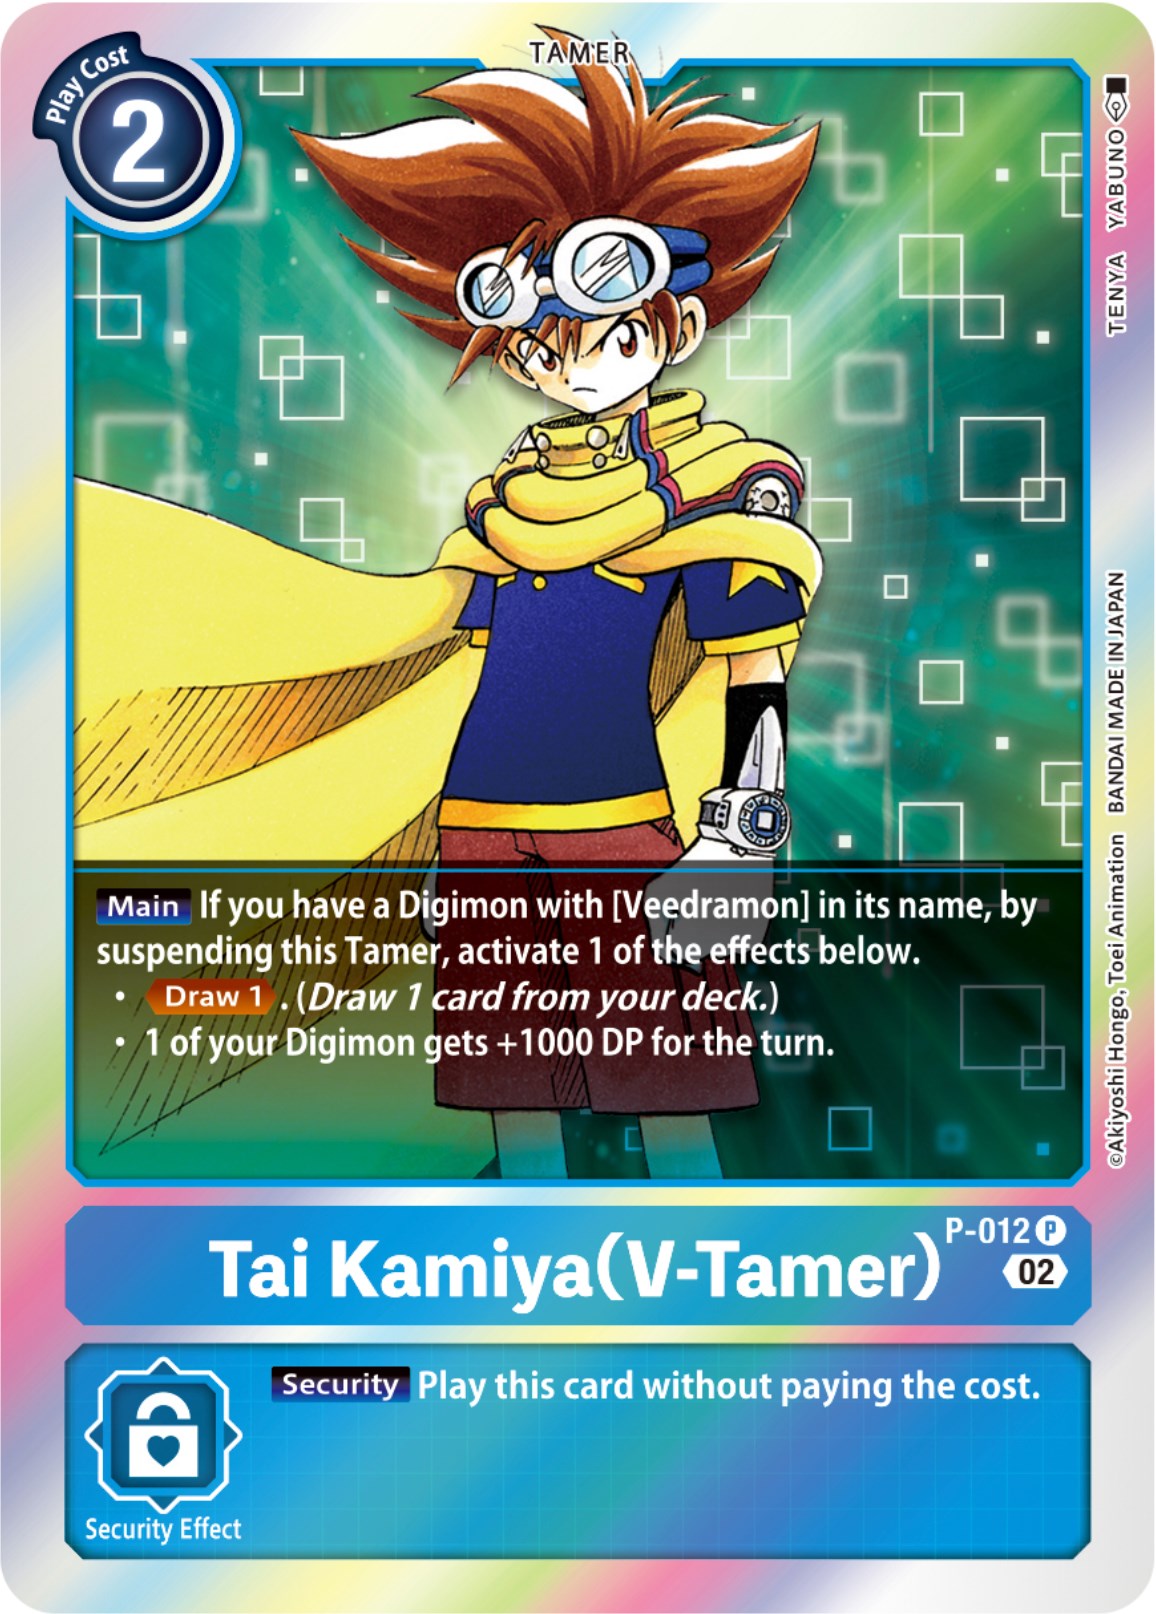 Tai Kamiya (V-Tamer) - P-012 (Resurgence Booster Reprint) [P-012] [Resurgence Booster] Foil